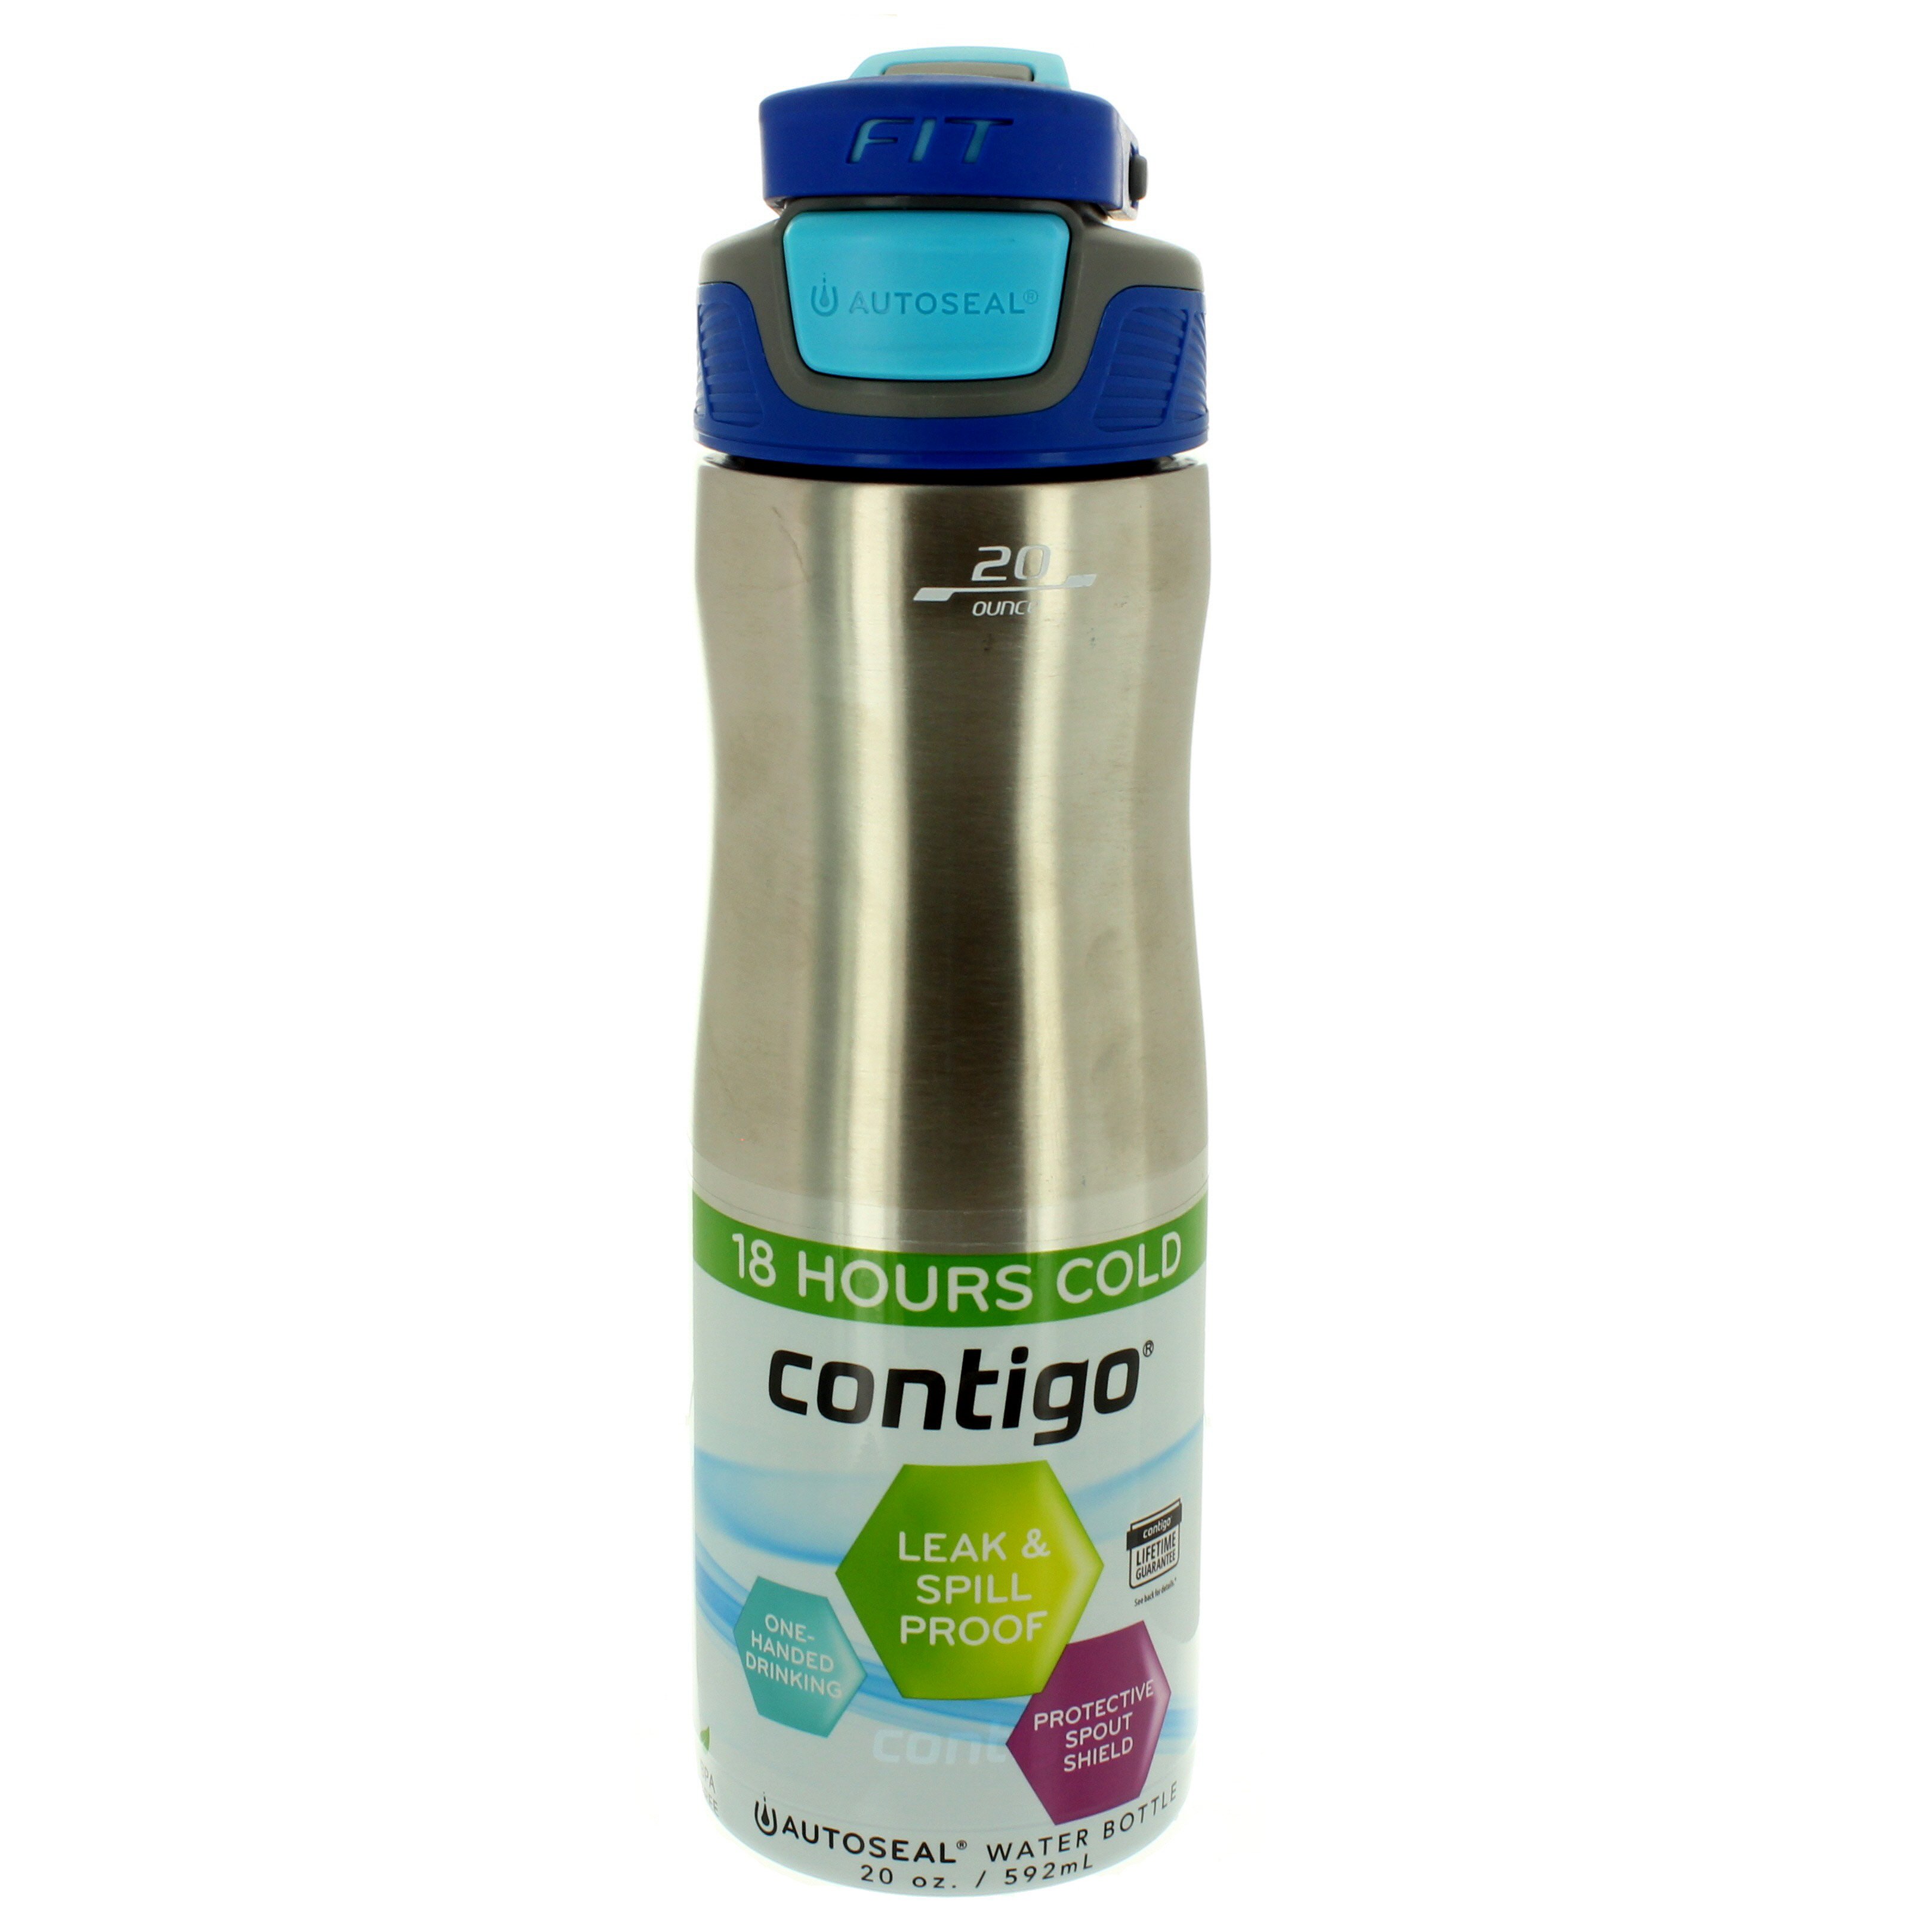 Contigo AUTOSEAL Water Bottle Reviews